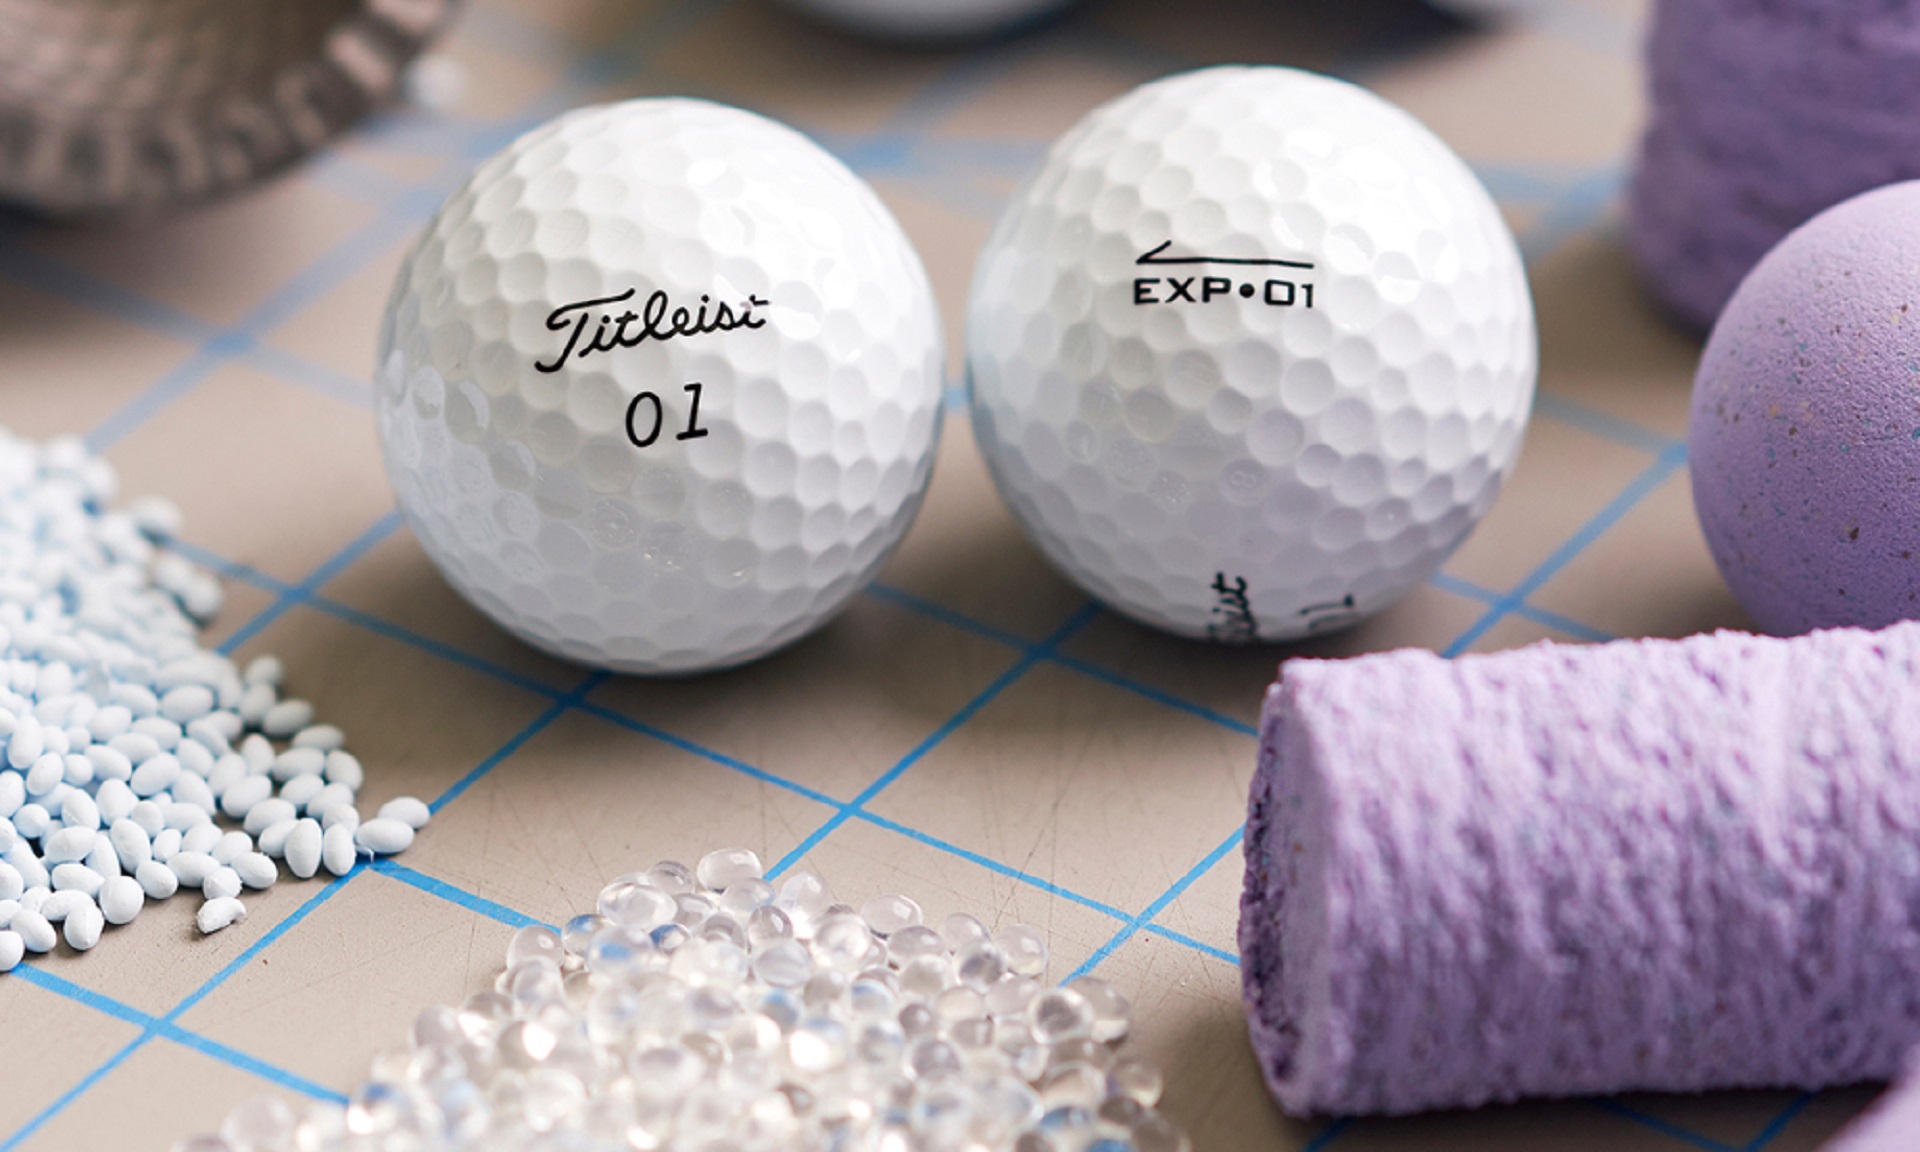 Vallen Registratie zoals dat Golfballen kopen? 9 tips: kies de beste golfbal • Golf.nl